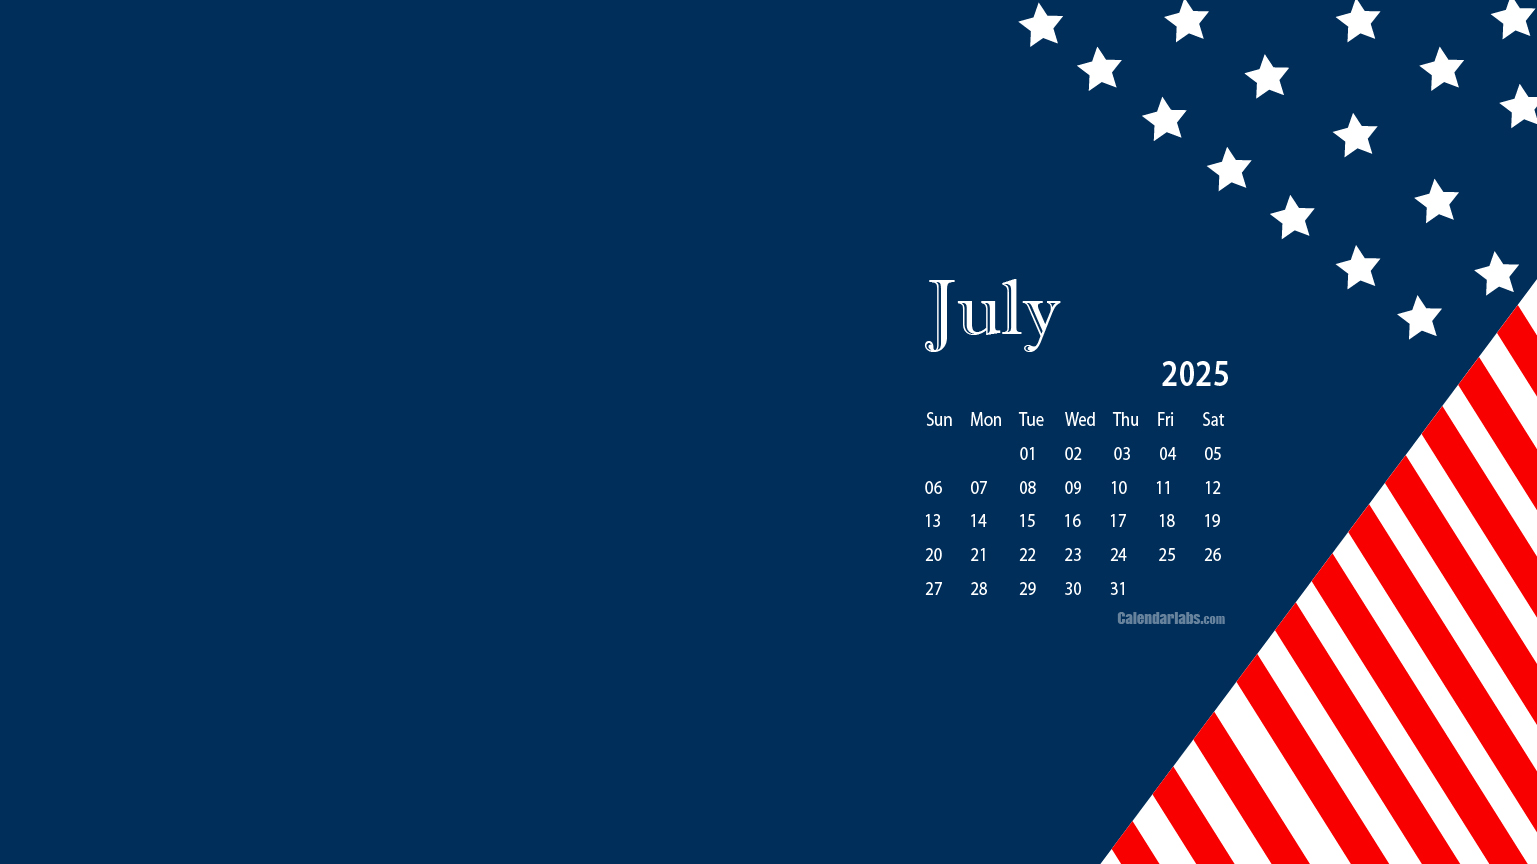 July 2025 Desktop Wallpaper Calendar CalendarLabs